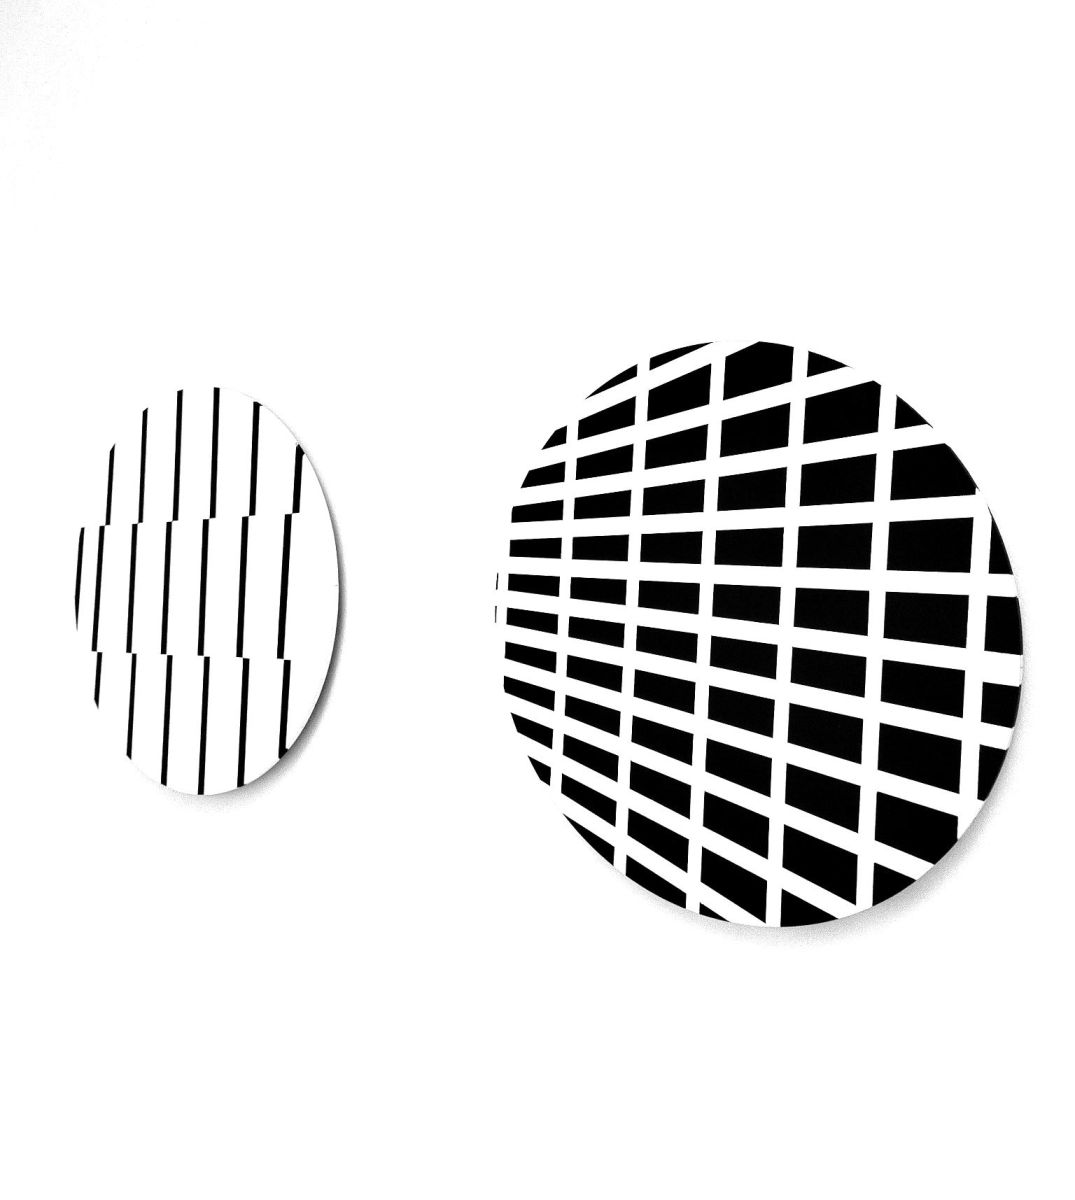 christian eder-art-circles - black and white